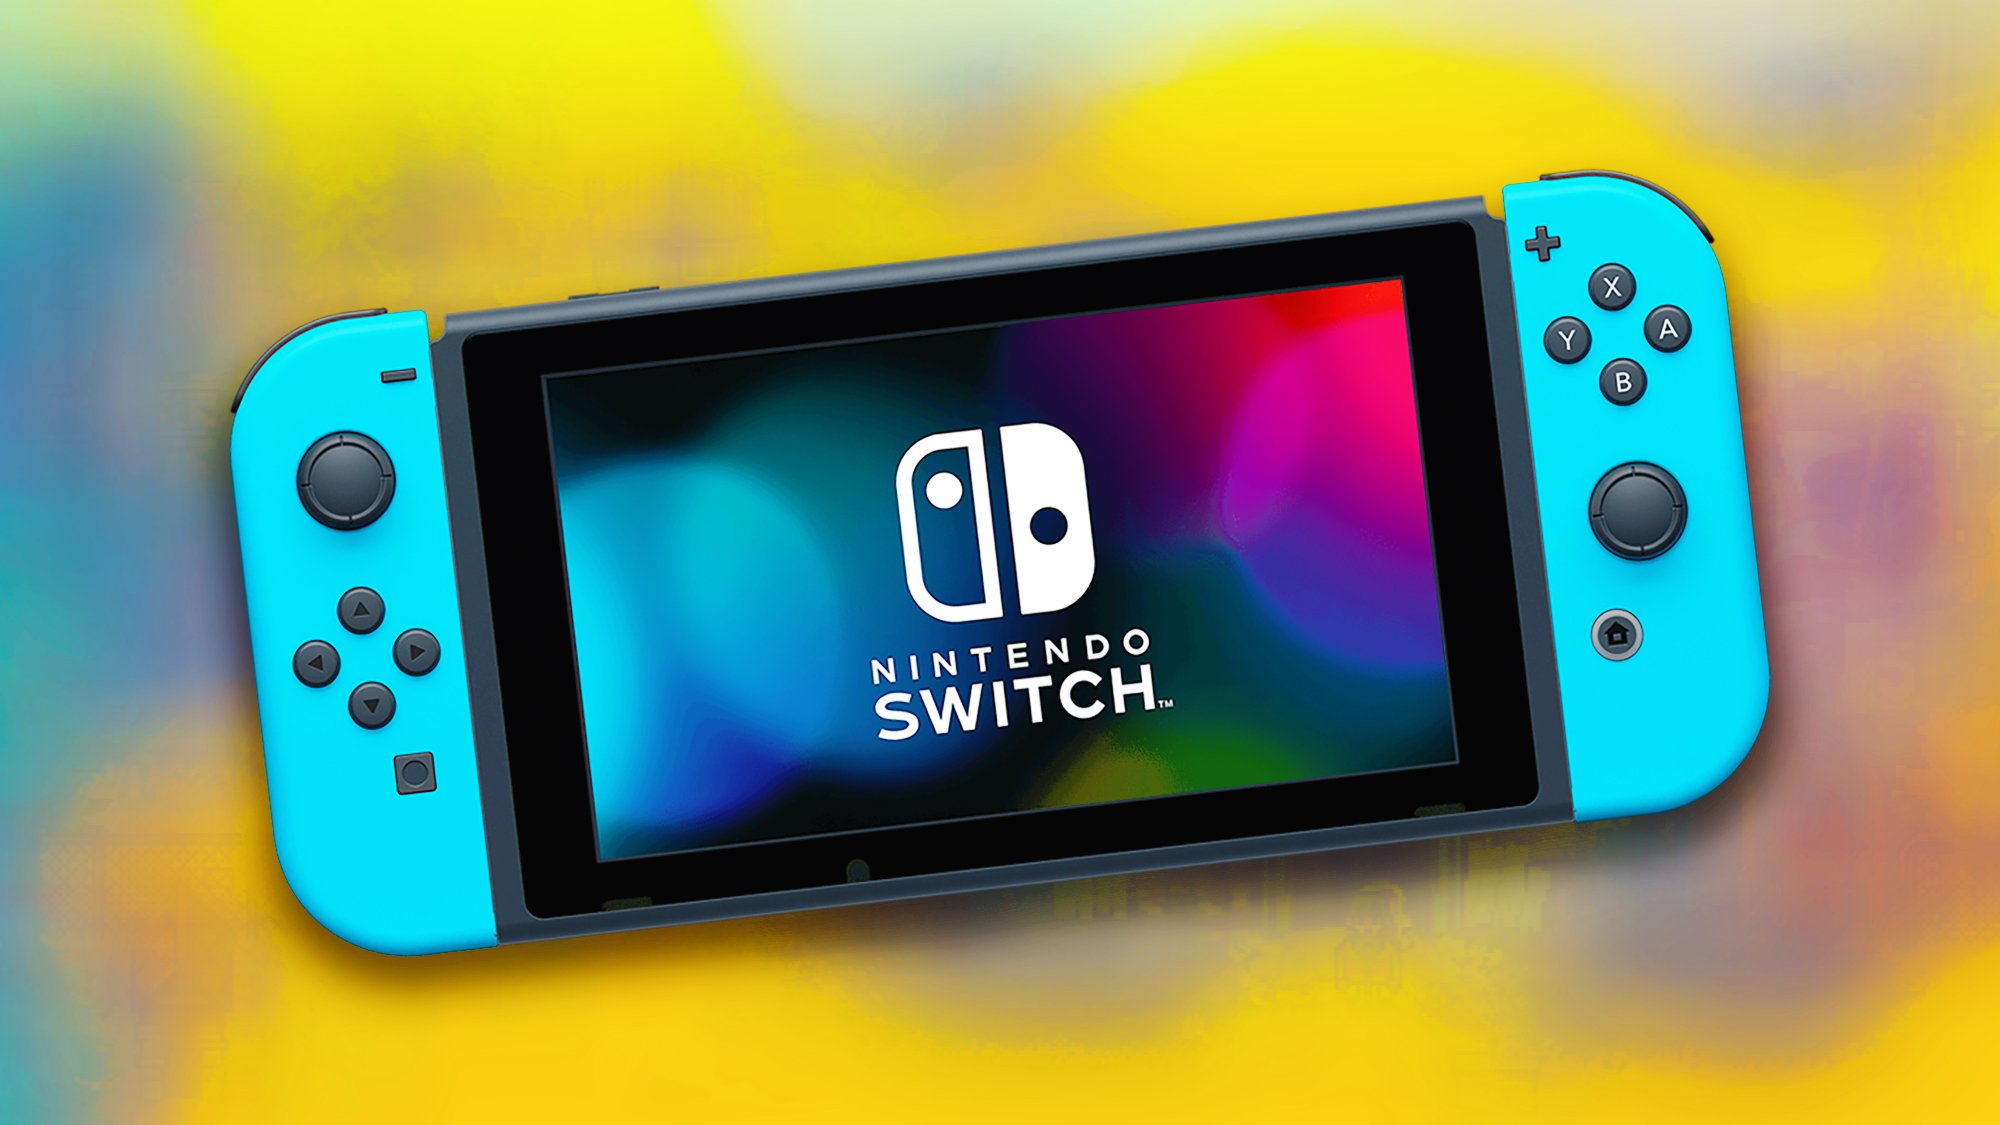 Nintendo Switch : un nouveau jeu gratuit pour les abonnés, c'est une grosse claque